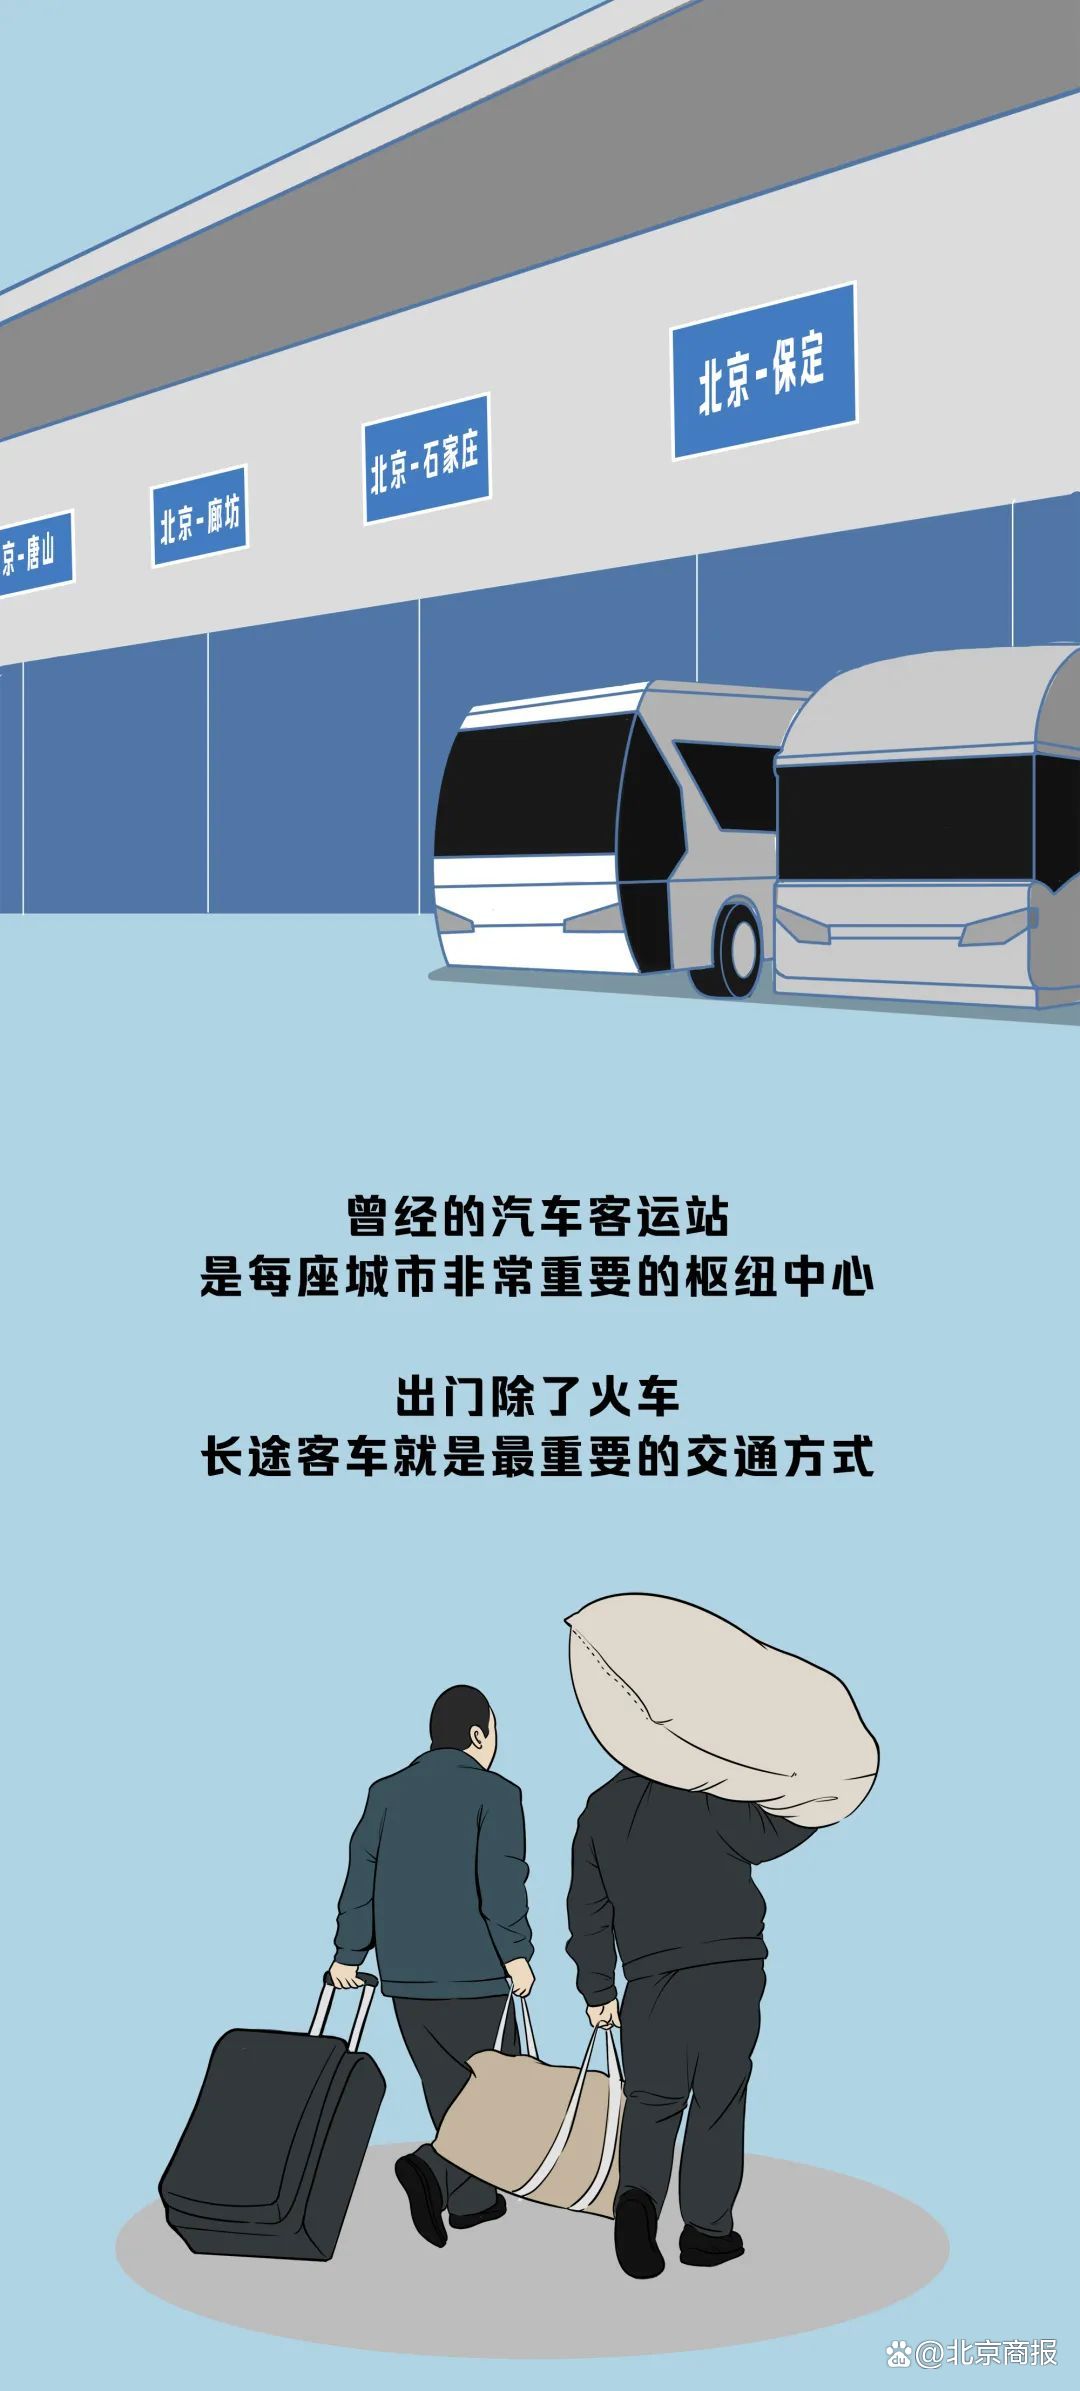 娛樂城：滿載鄕愁與記憶，汽車客運站要消失了嗎？